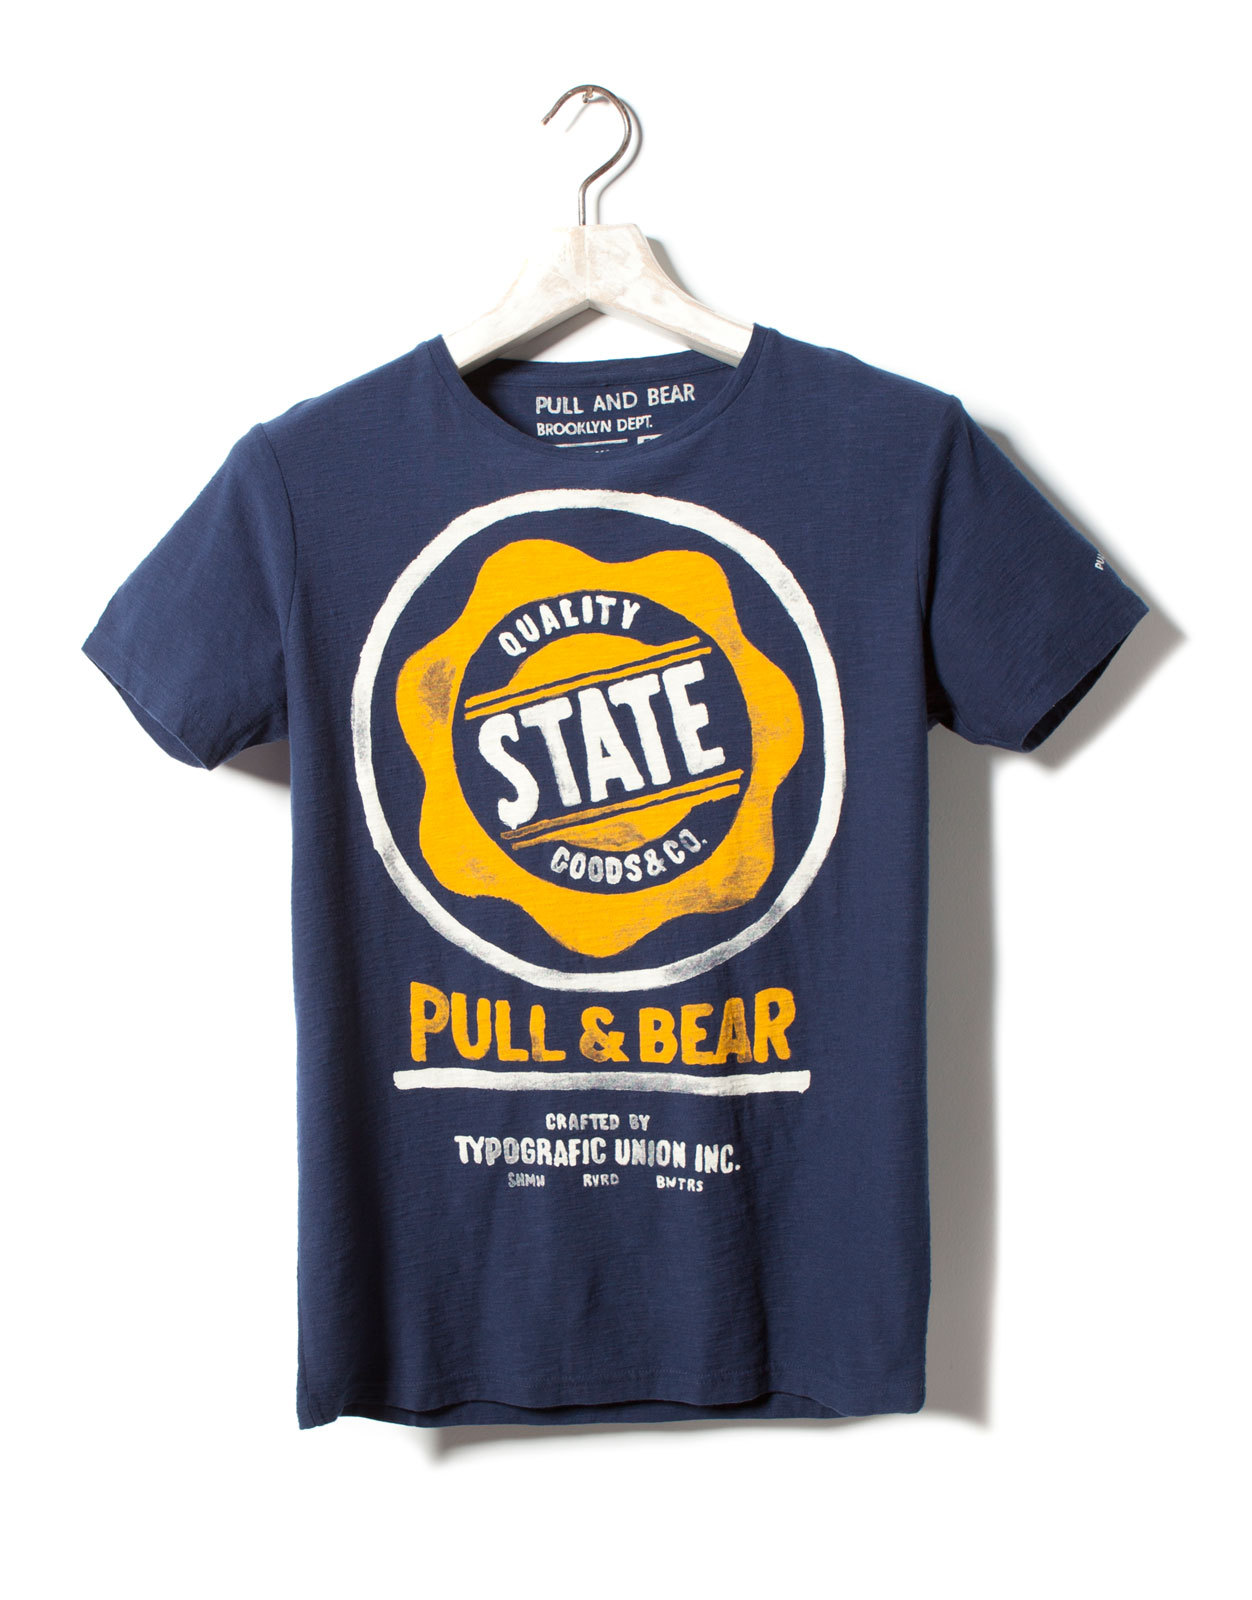 Pull and Bear t-shirt 2012.2.14 #1499 fotója